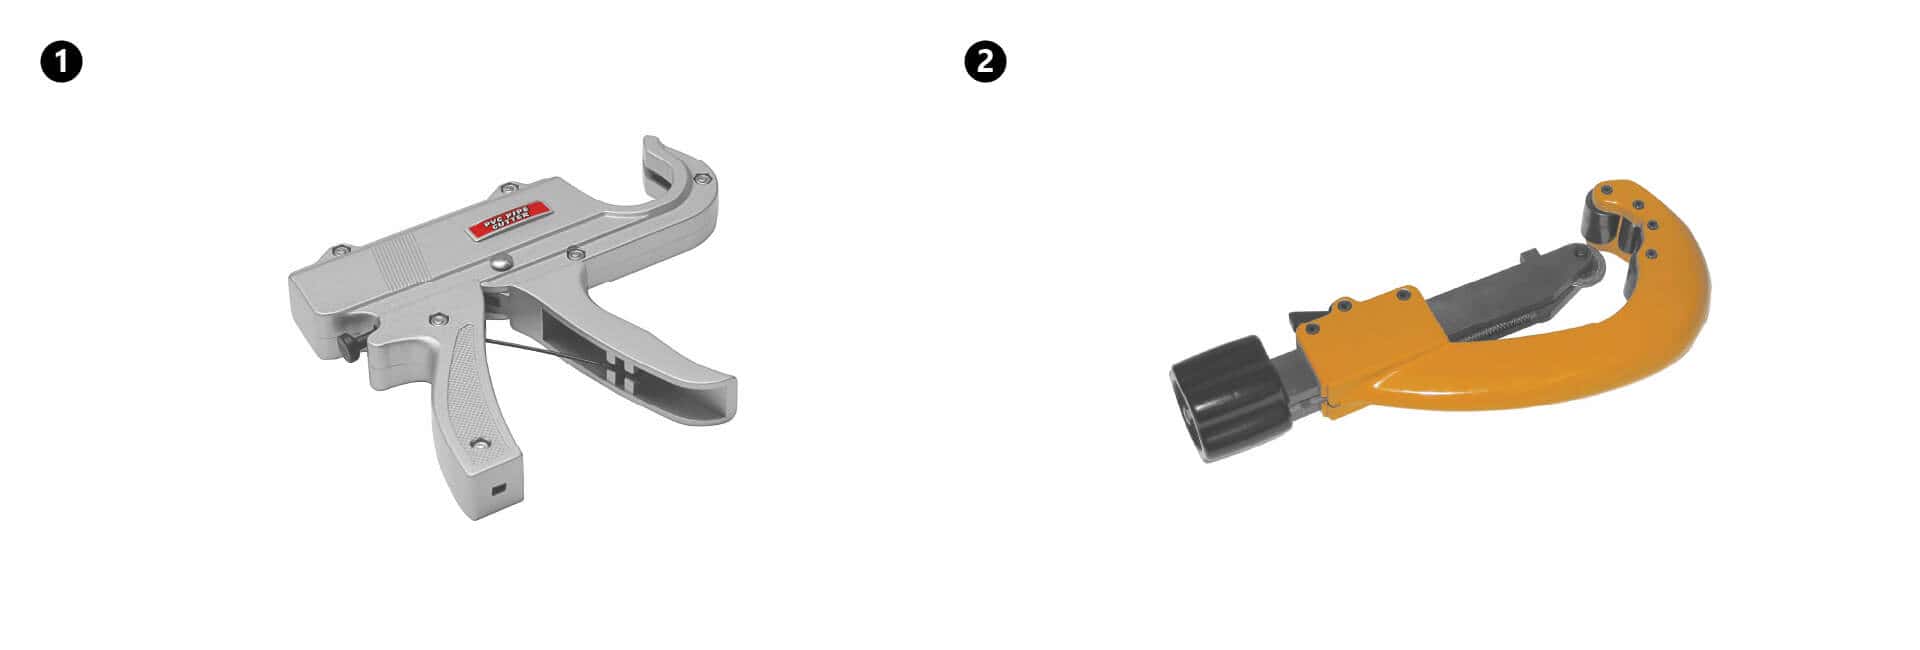 KAN-therm – ultraPRESS-System – das Foto der Pistolenschere für die Rohre mit den Durchmessern von 14-32 mm und der Rollenschere für die Durchmesser von 16-63 mm.